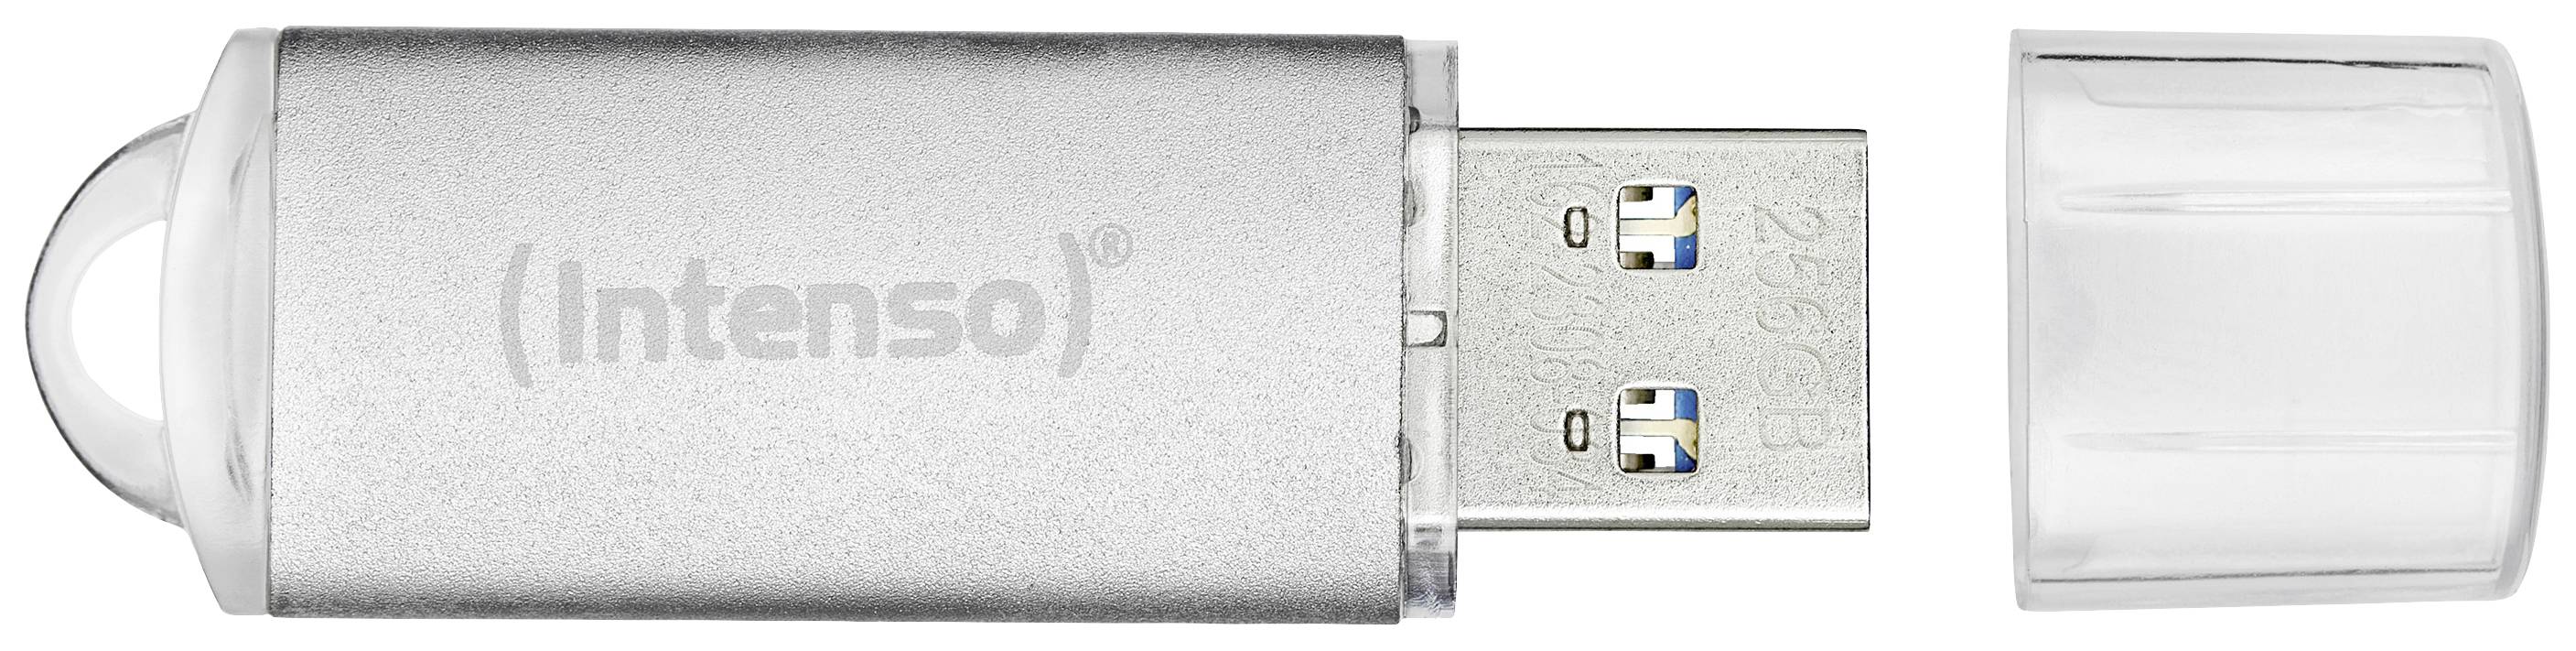 INTENSO USB-St.Jet Line 64GB